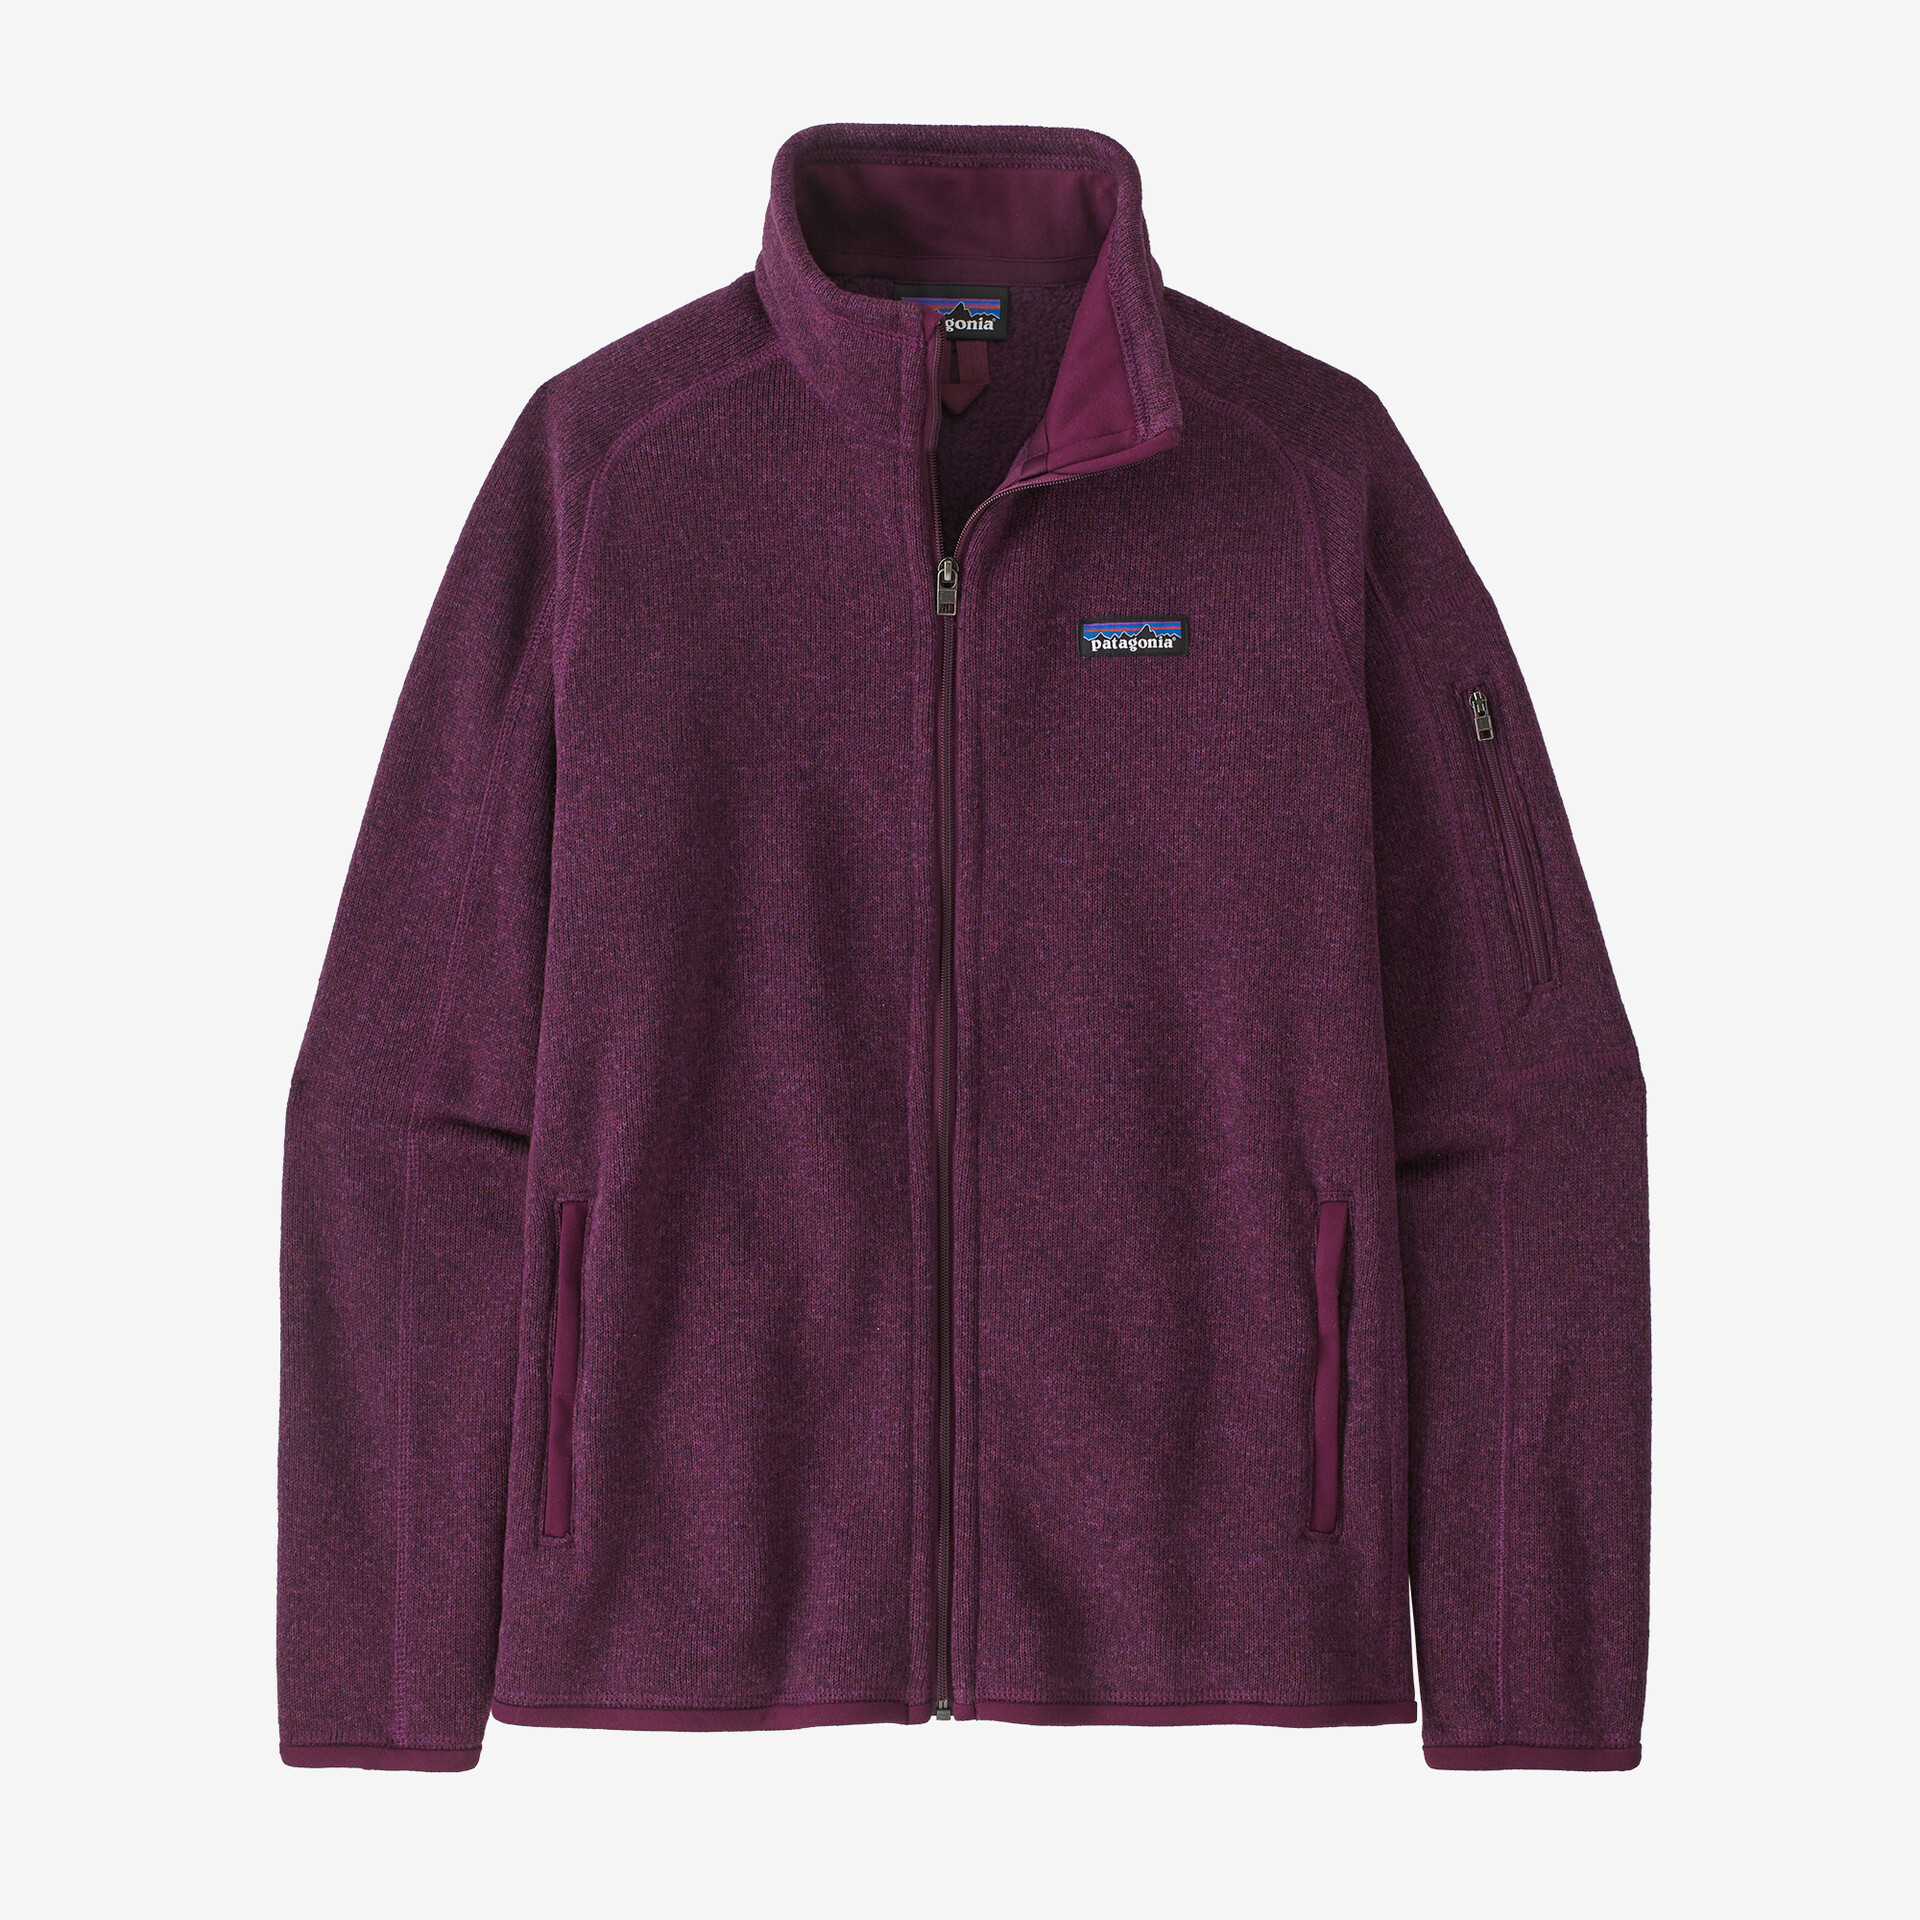 Женская флисовая куртка Patagonia, цвет Night Plum детский свитер флисовая куртка patagonia цвет night plum